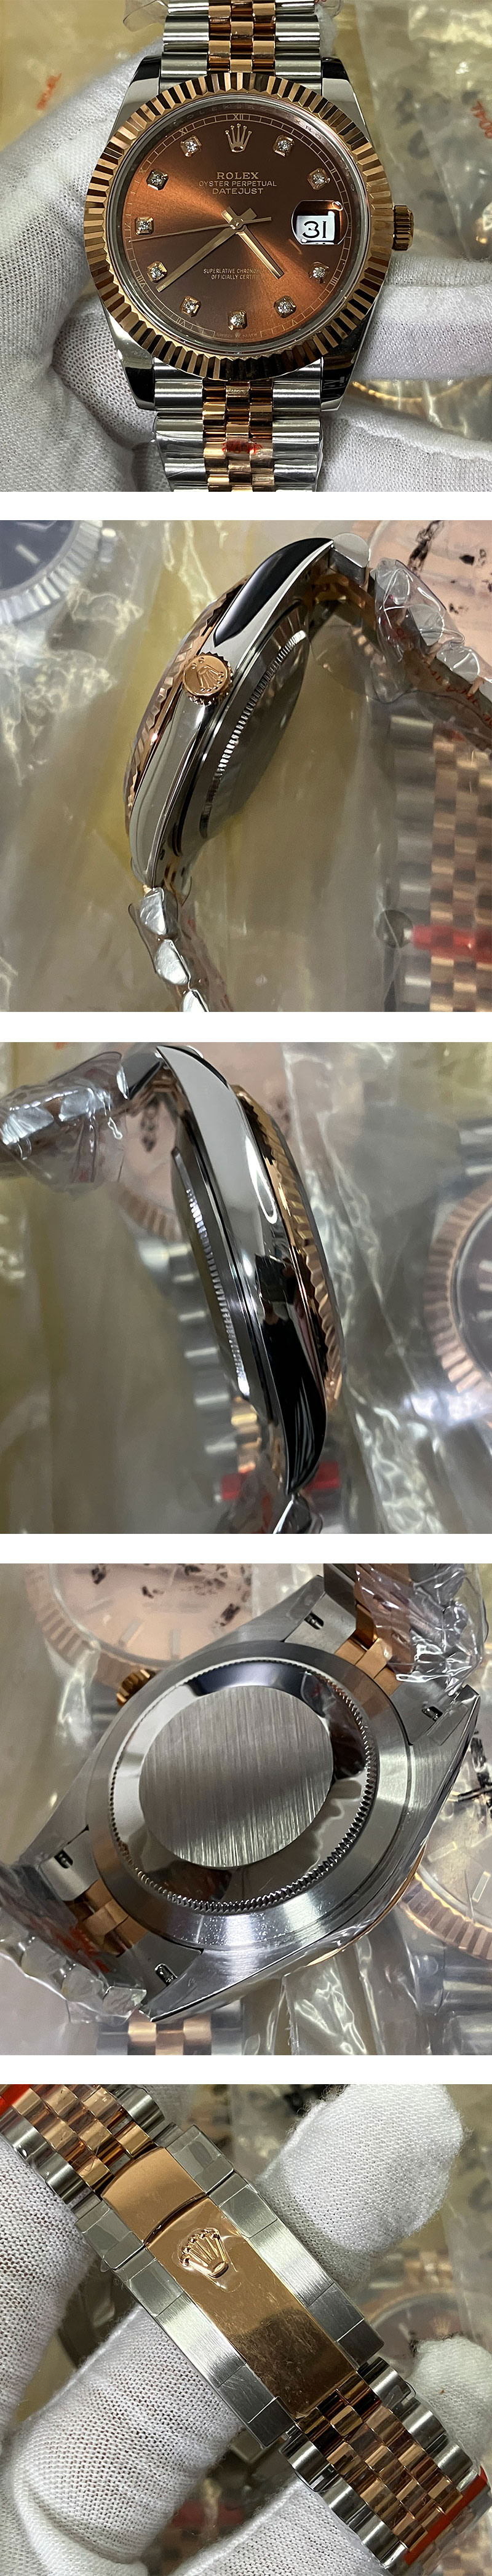 ロレックス最高級スーパーコピー時計 デイトジャストm126331-0004チョコレート 41mm